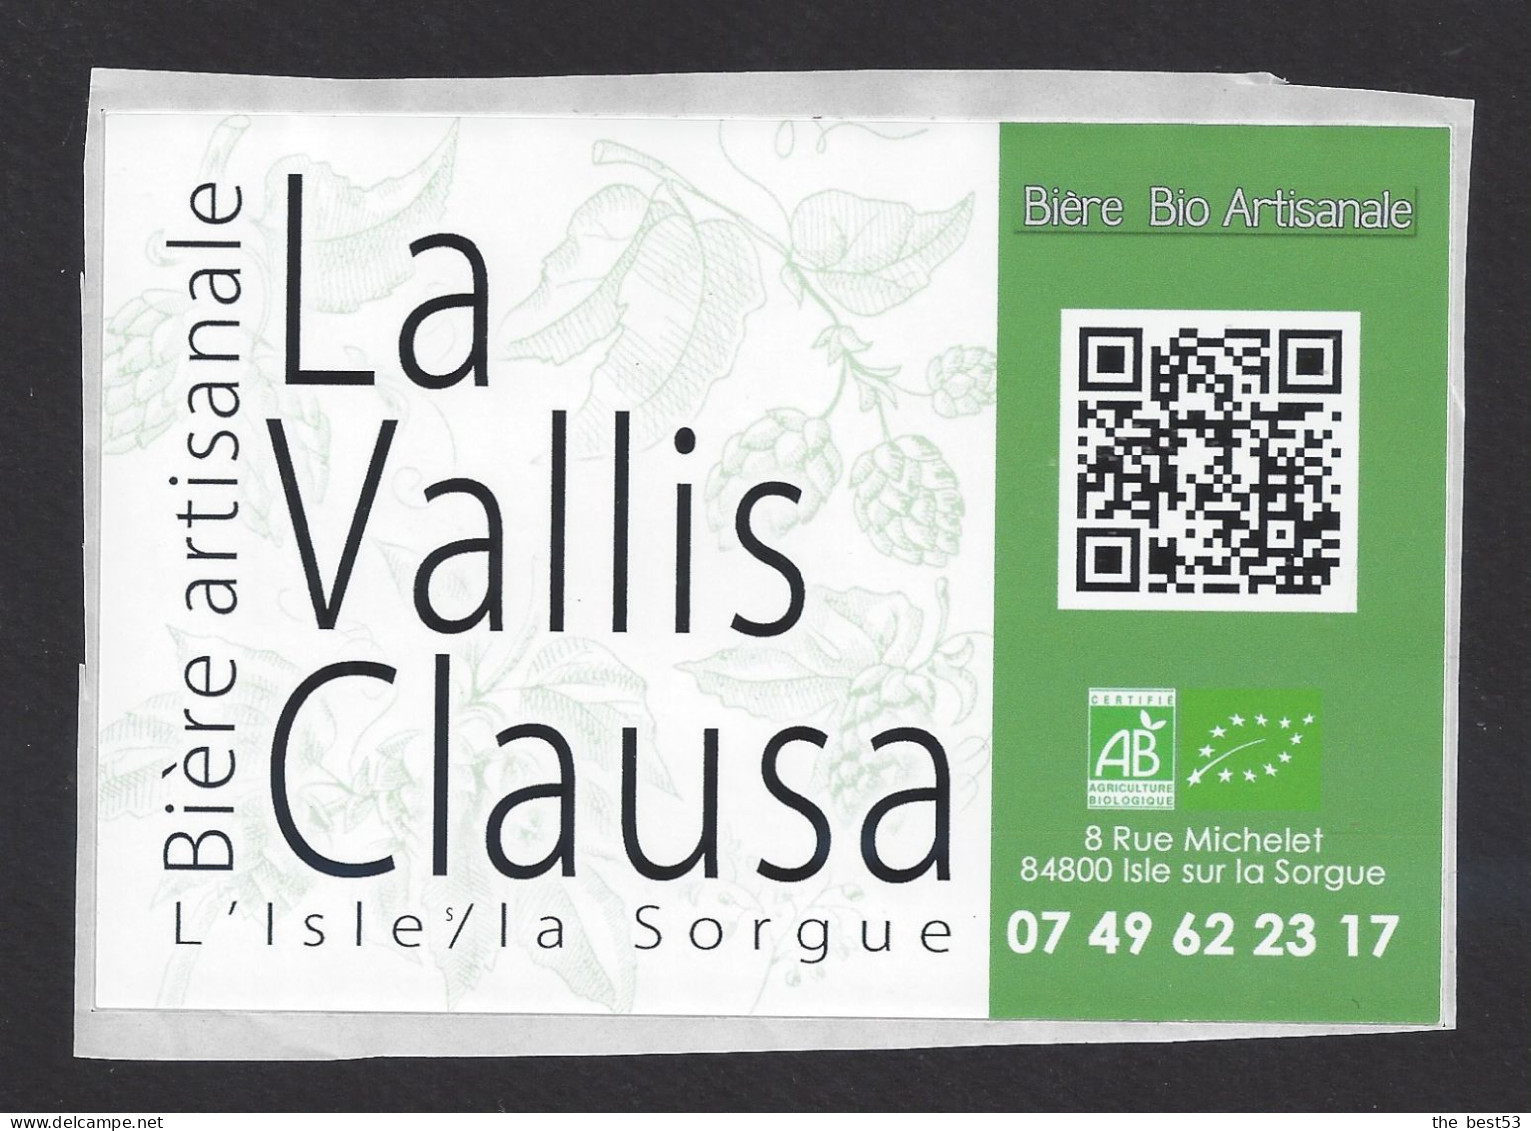 Etiquette De Bière Bio   -  La Vallis Clausa  -  Brasserie  De L'Isle Sur La Sorgue (84) - Beer